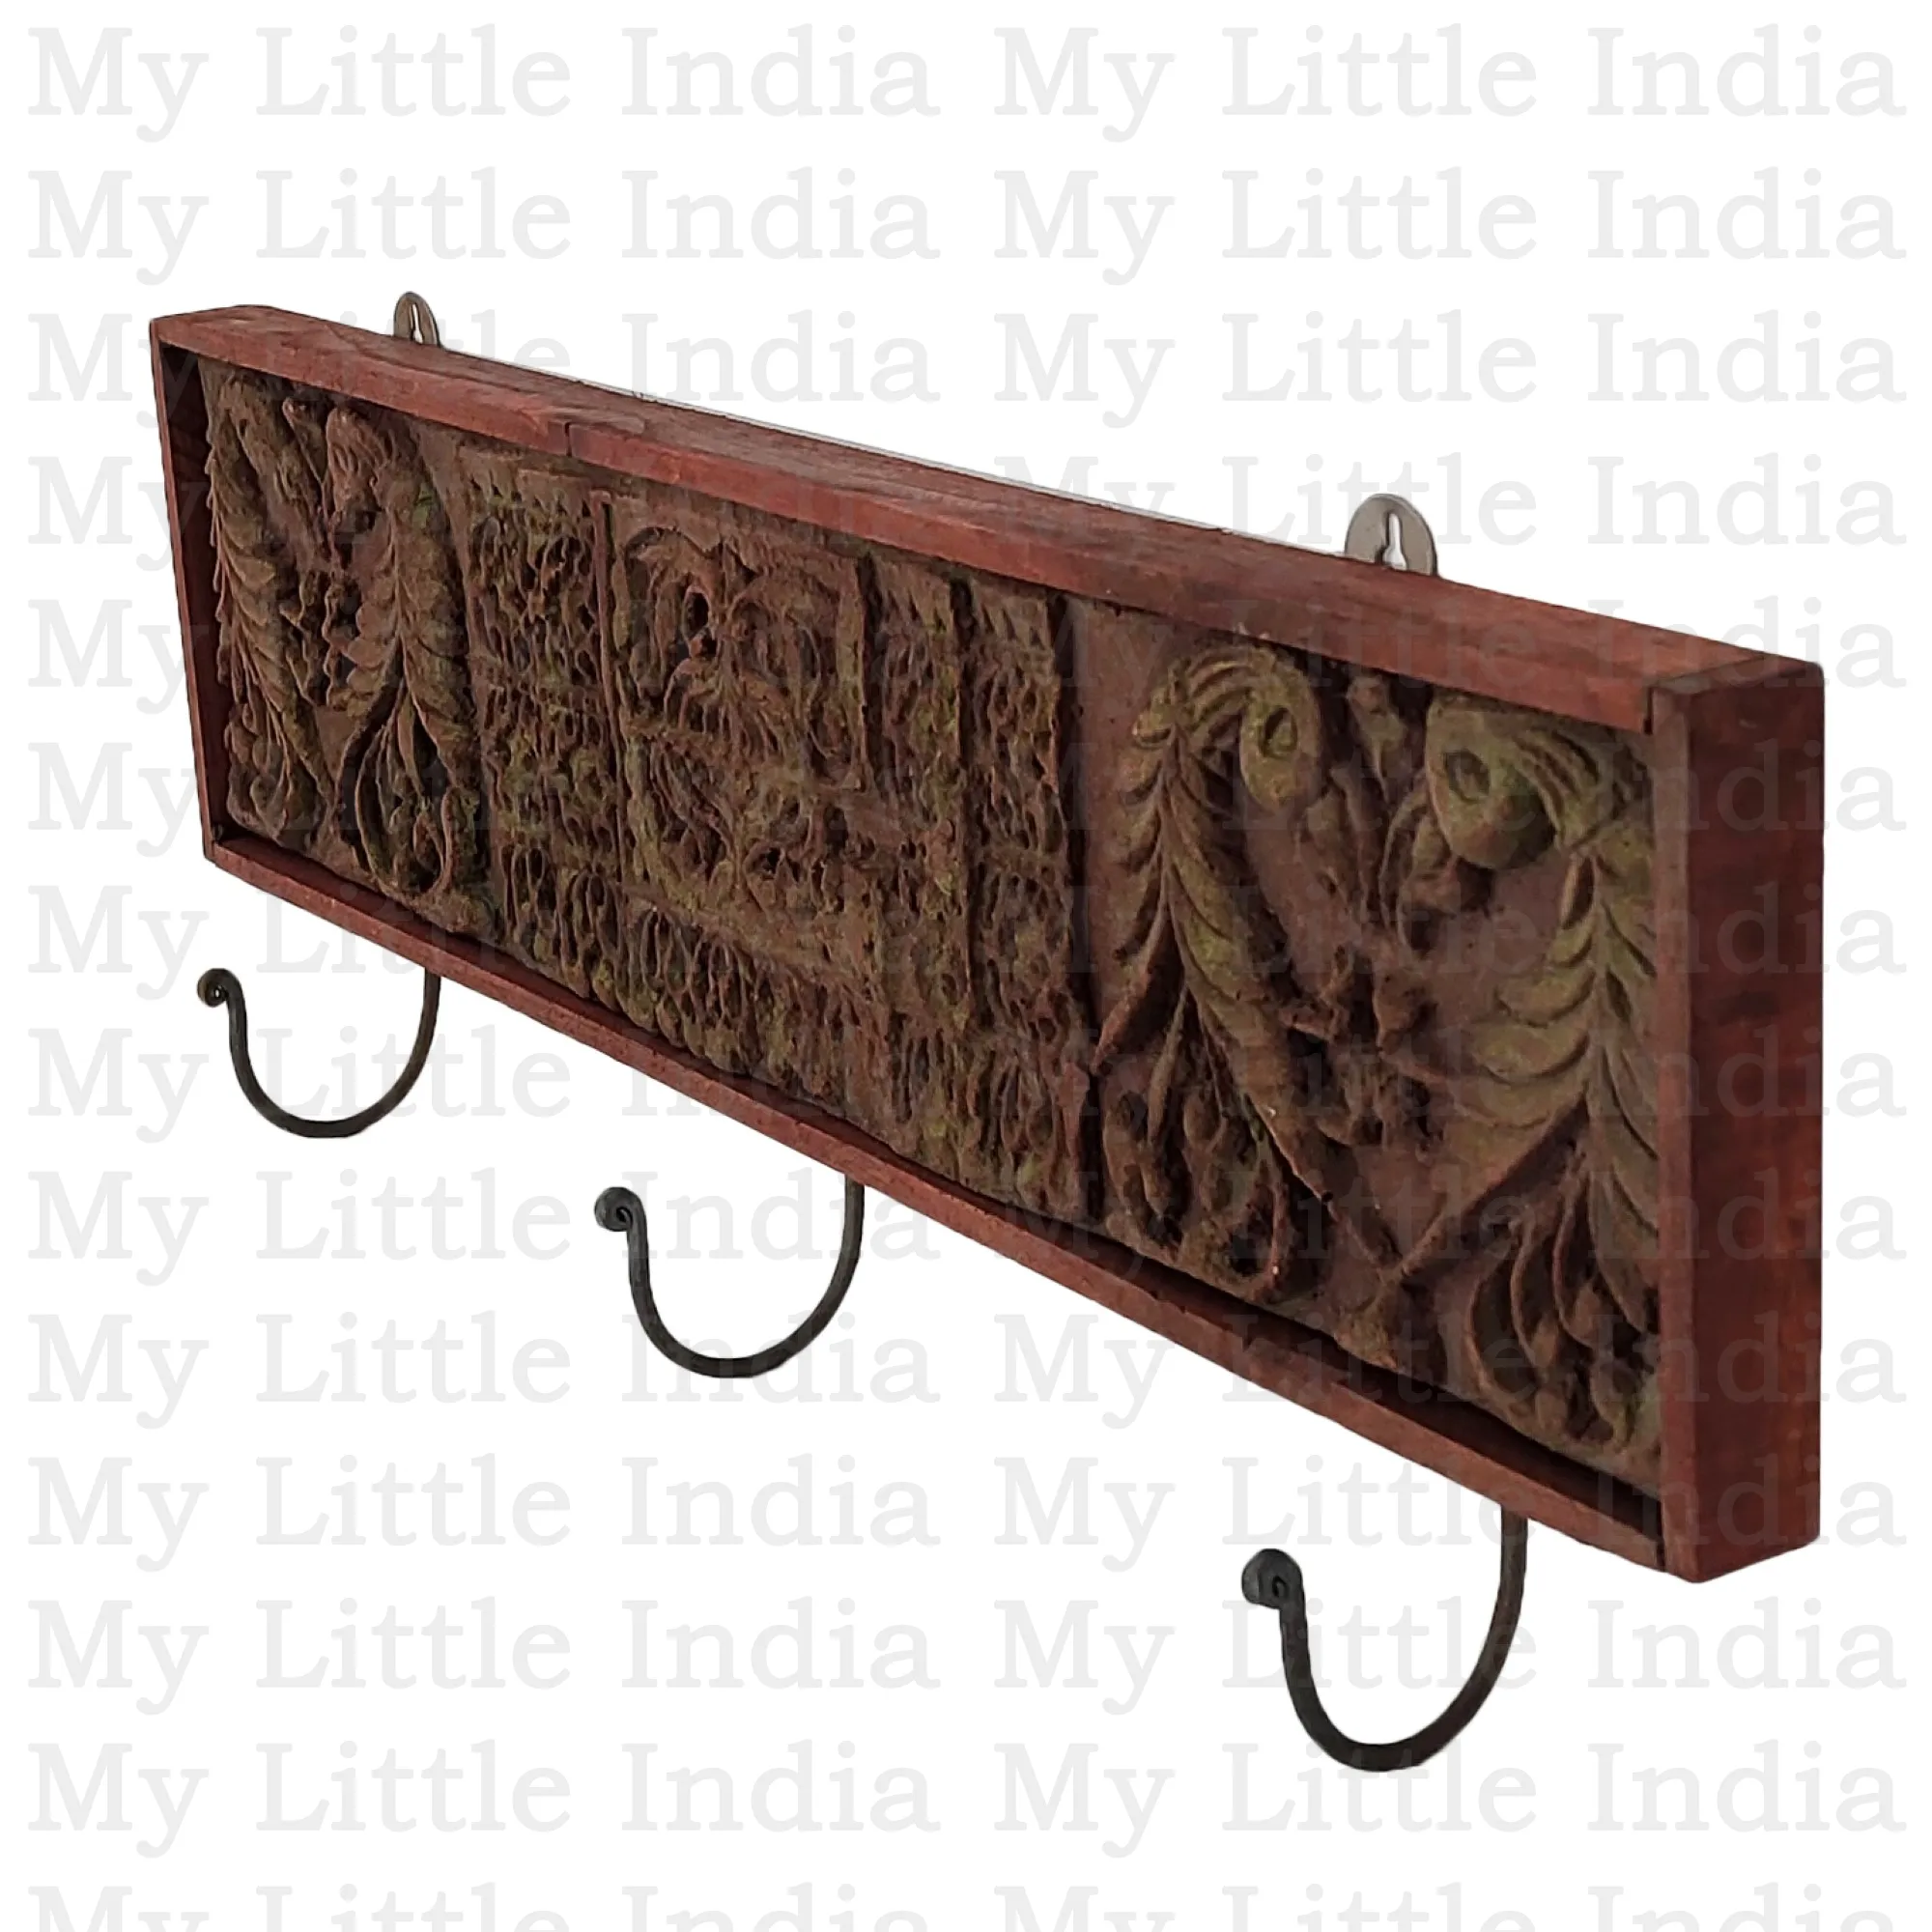 Vimal Indyjski wieszak z drewna i betonu